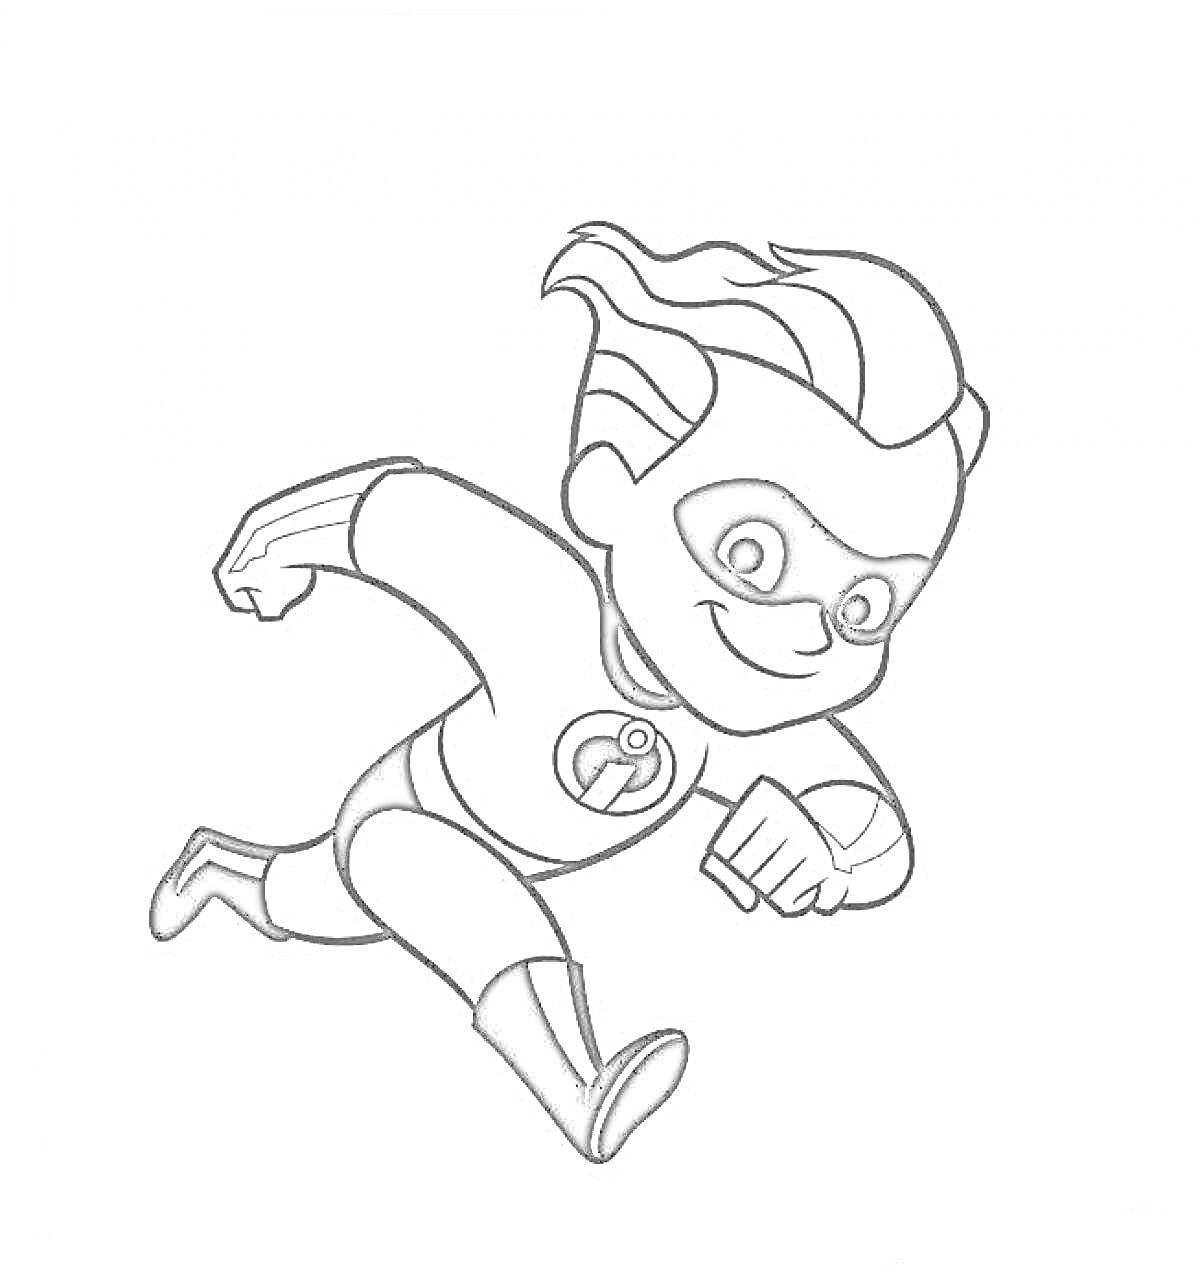 Раскраска Персонаж из Суперсемейки, мальчик в маске и костюме супергероя, в прыжке